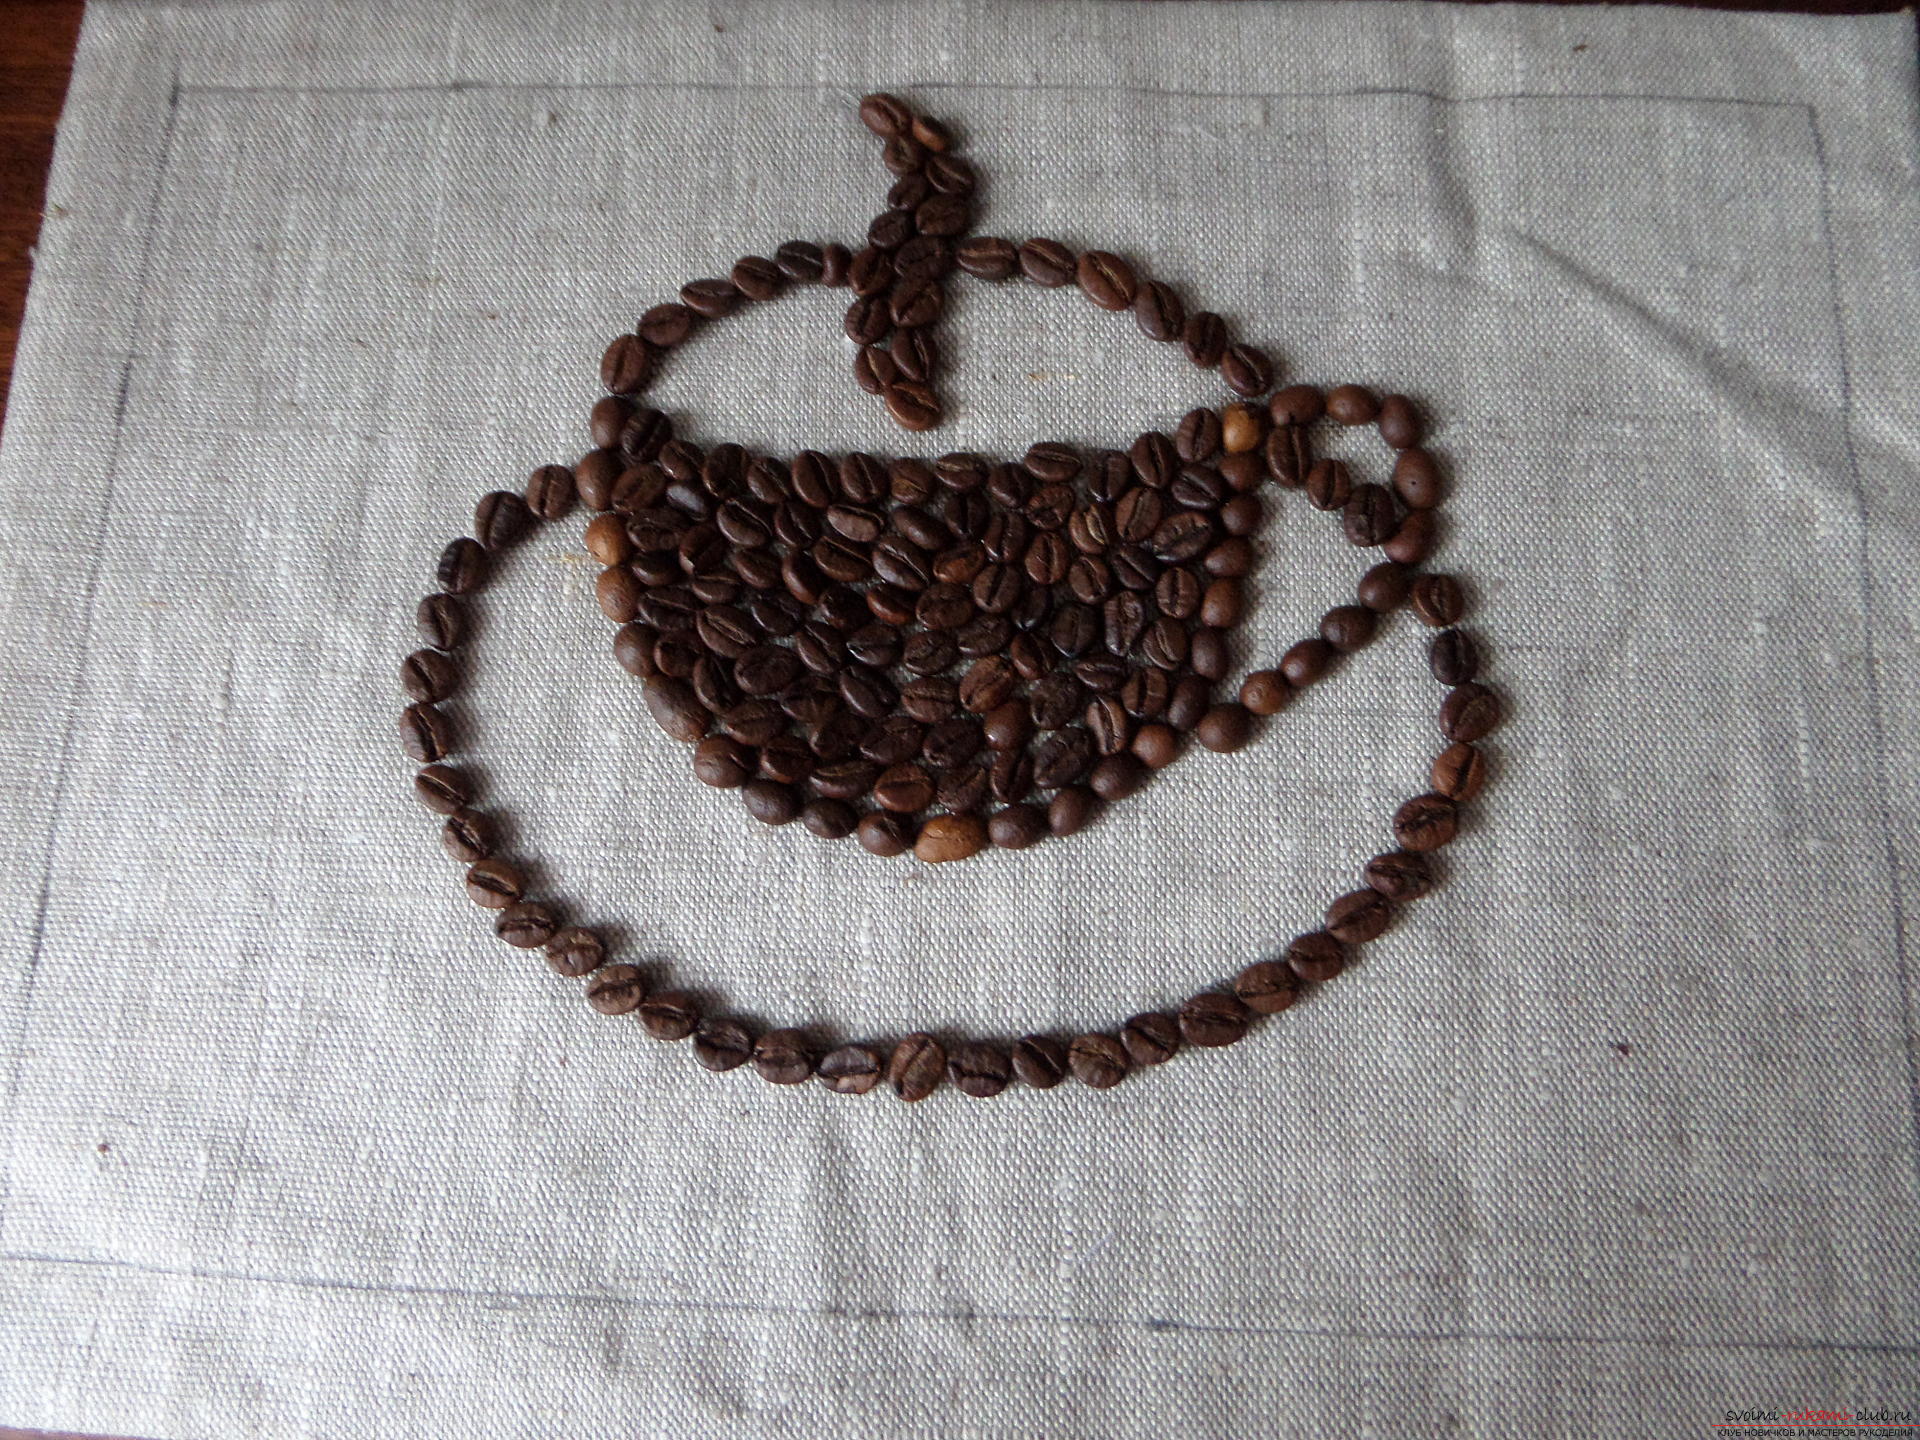 Deze masterclass met foto en beschrijving leert je hoe je koffie kunt maken van koffiebonen voor de keuken. Foto # 29